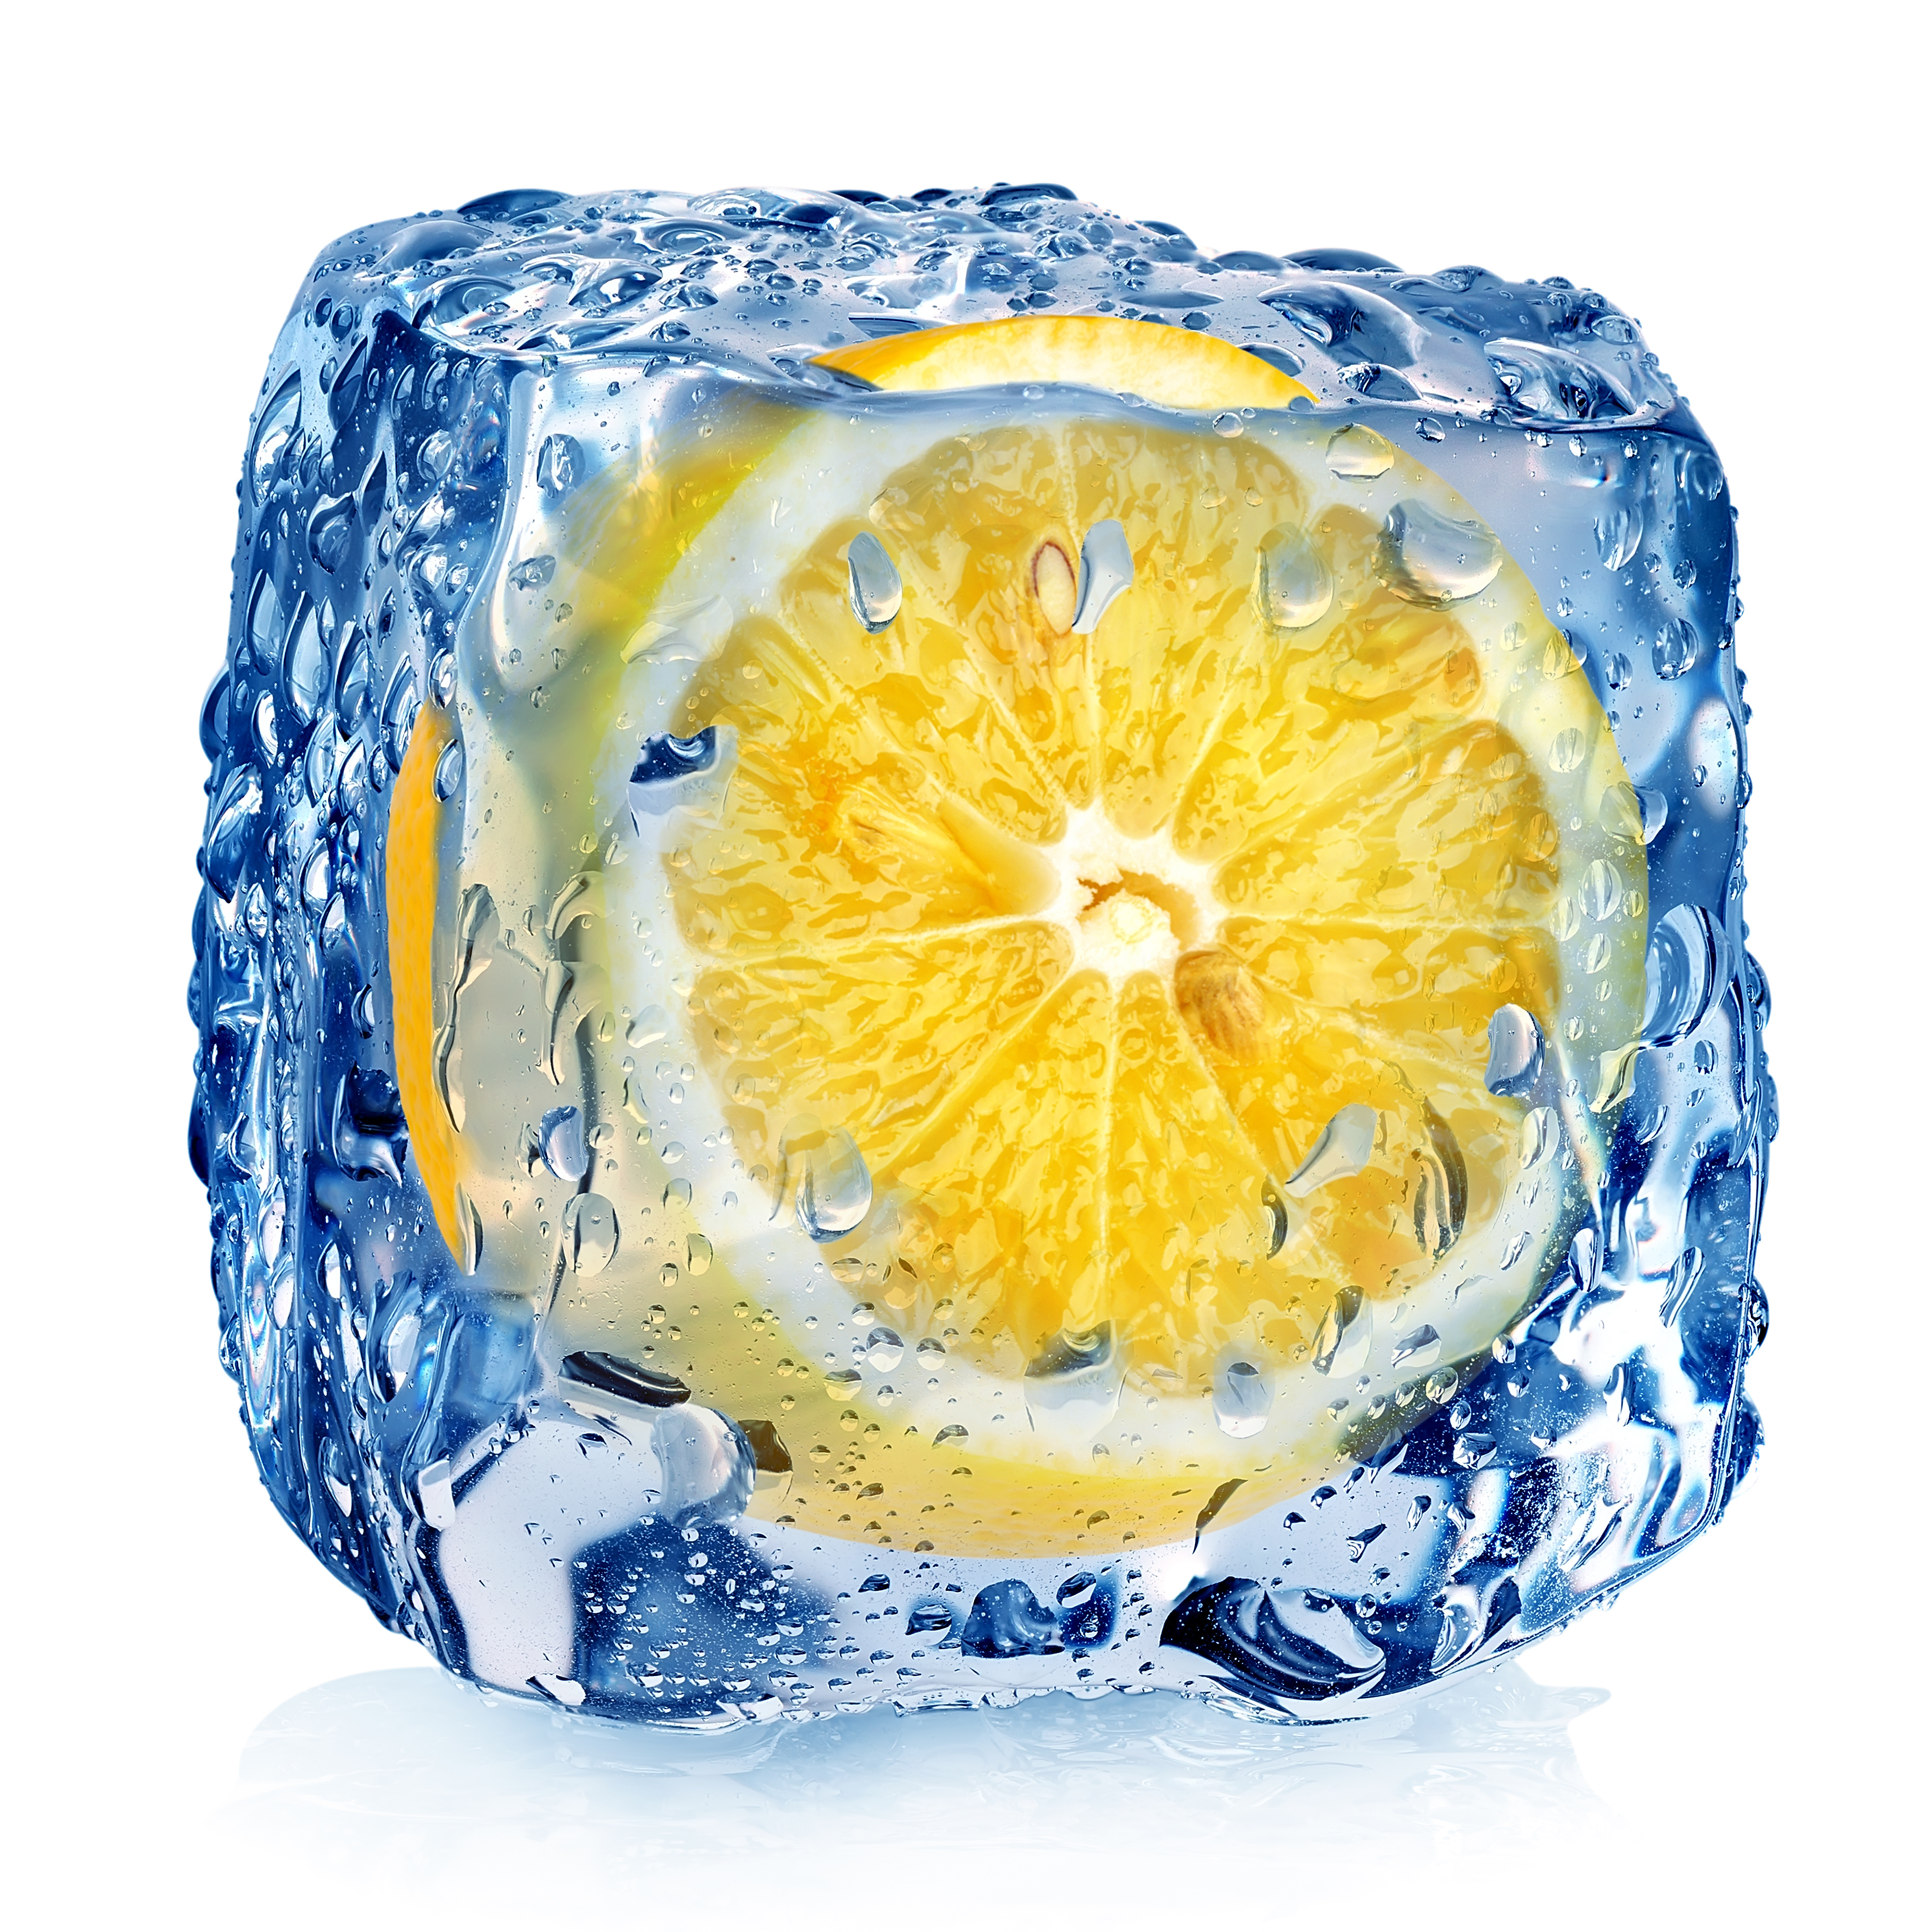 Frozen Lemon for Health